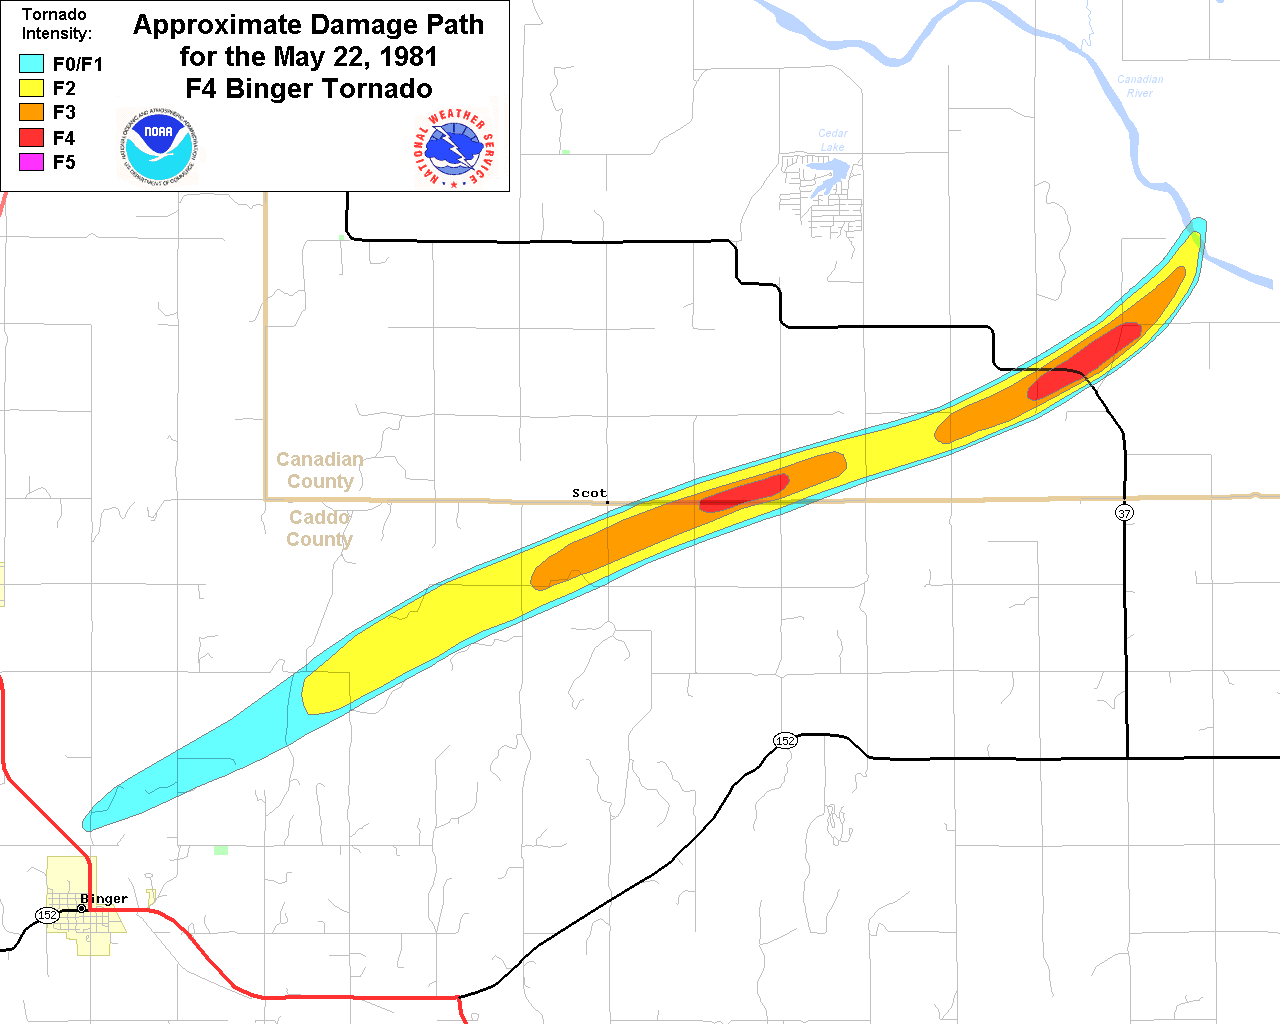 Violent Tornadoes (F4/F5/EF-4/EF-5) in Oklahoma (1950-Present)